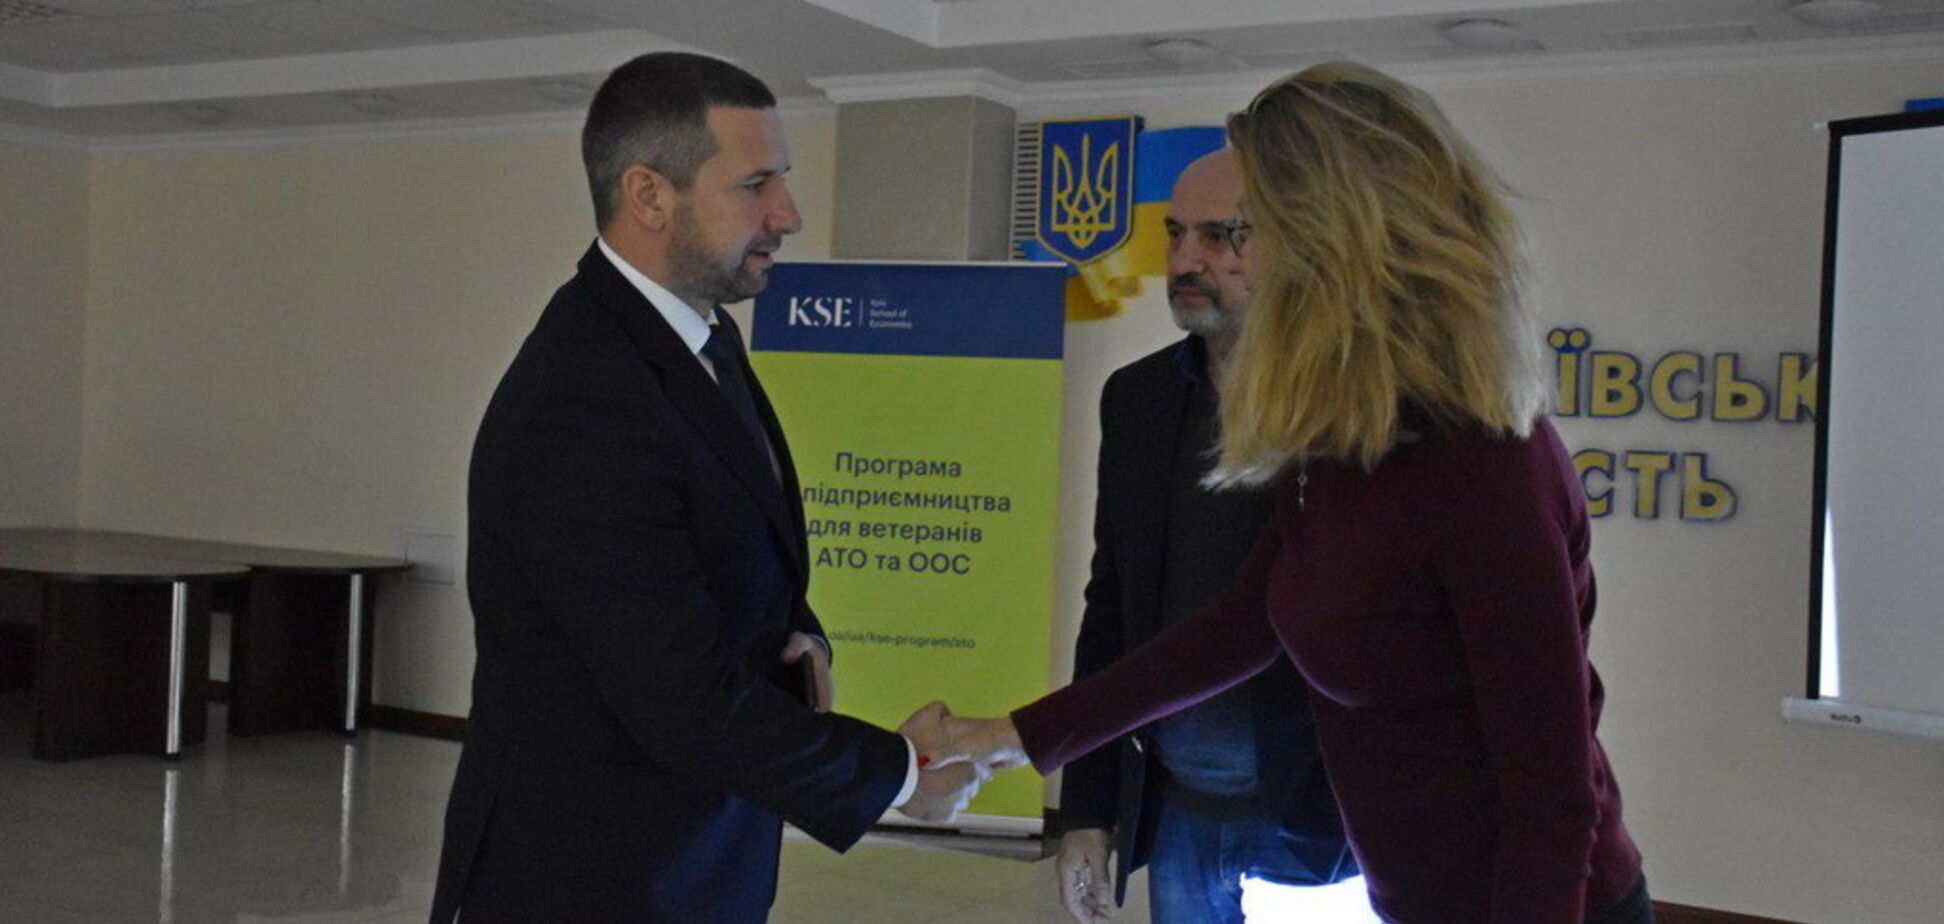 На Николаевщине стартовала бесплатная учебная Программа по предпринимательству для ветеранов АТО и ООС